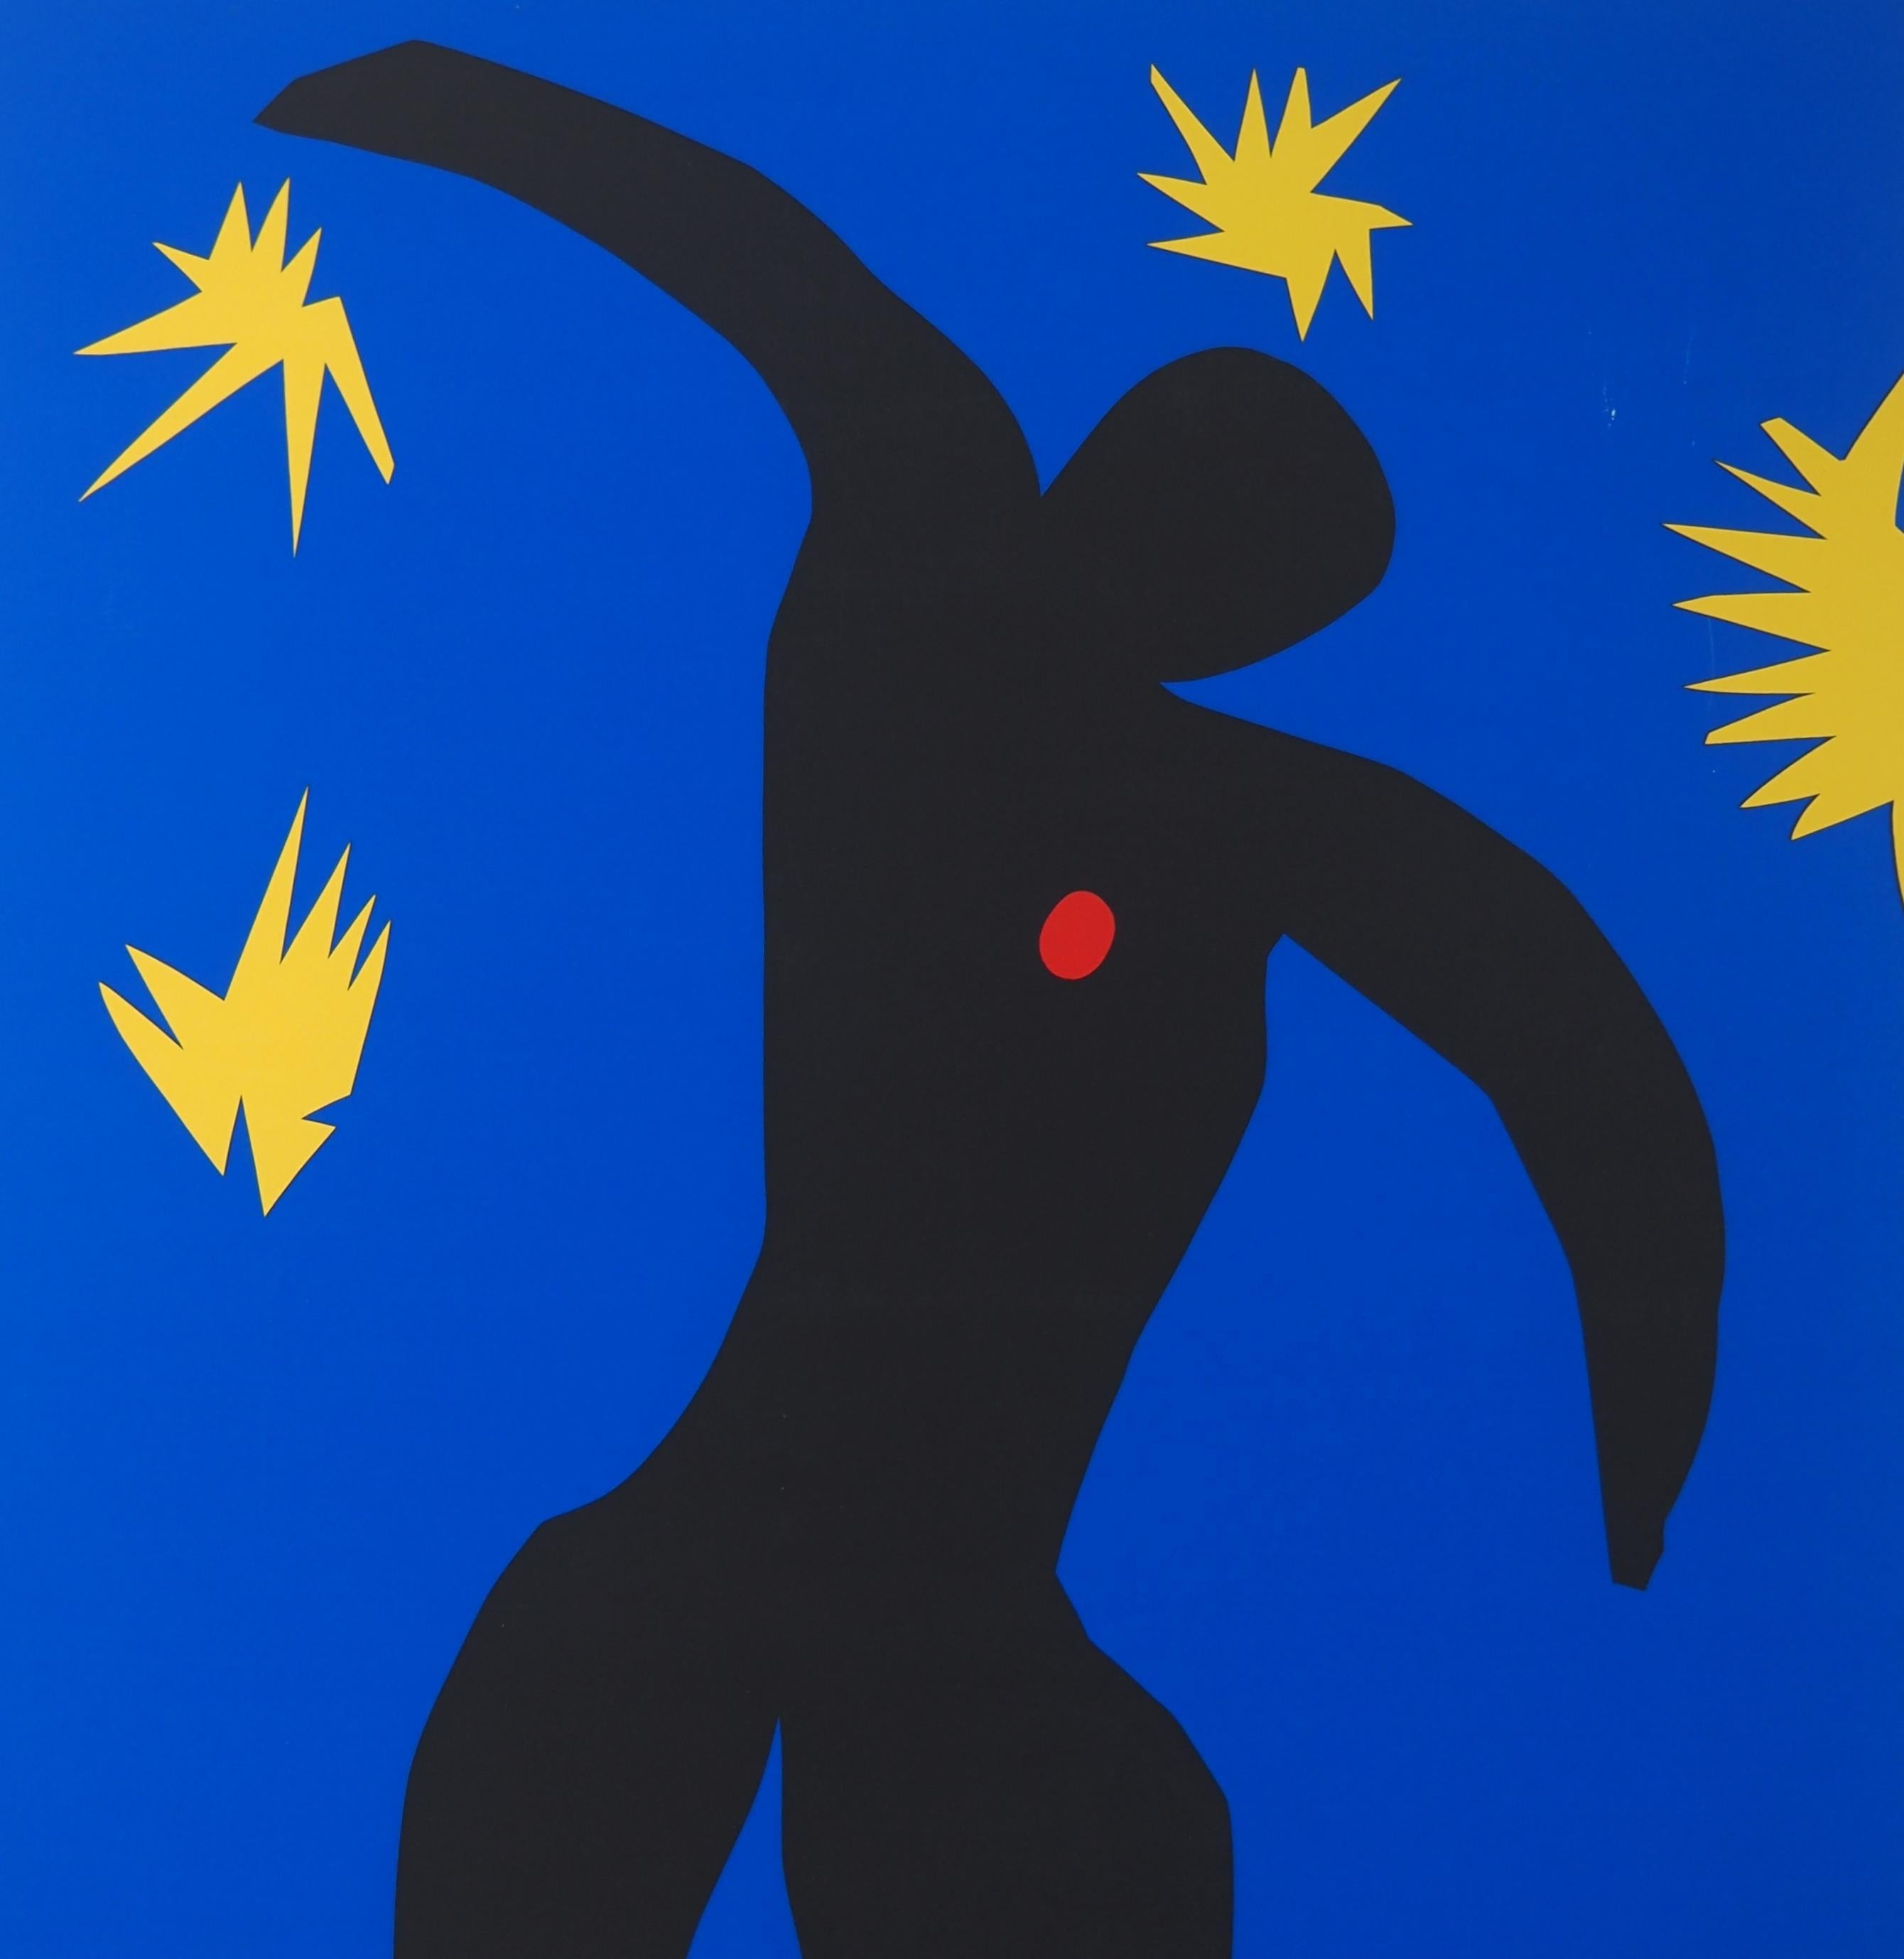 Icarus in the Stars - Siebdruck (Moderne), Print, von Henri Matisse